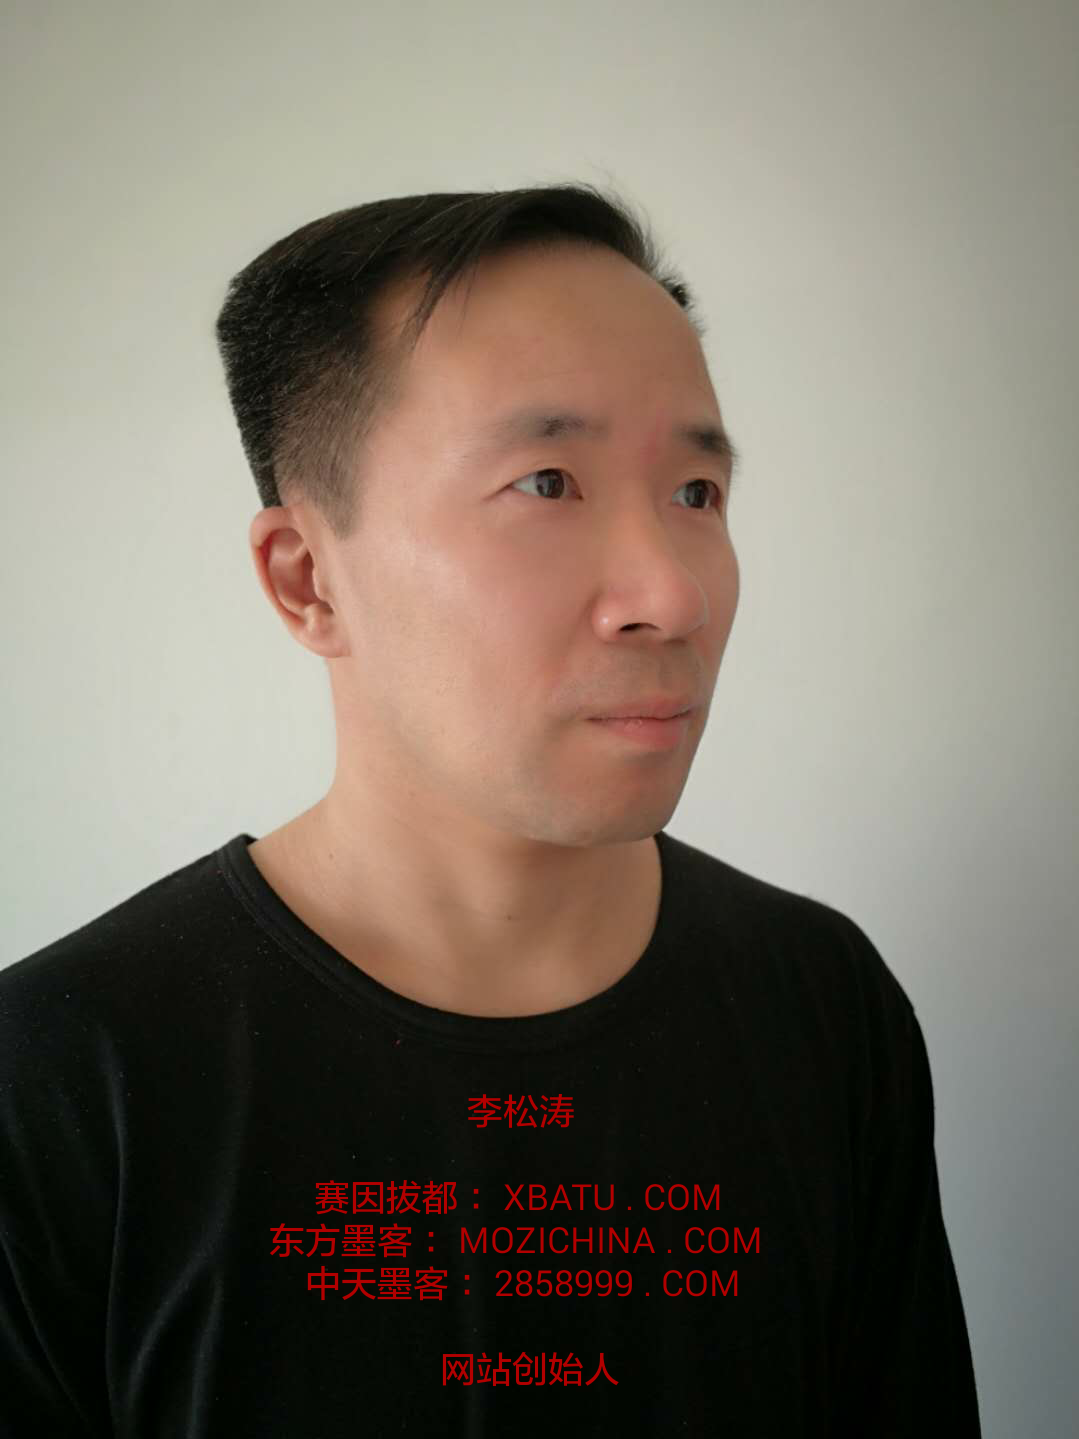 李松涛-xbatu.com-mozichina.com-2858999.com-网站-创始人